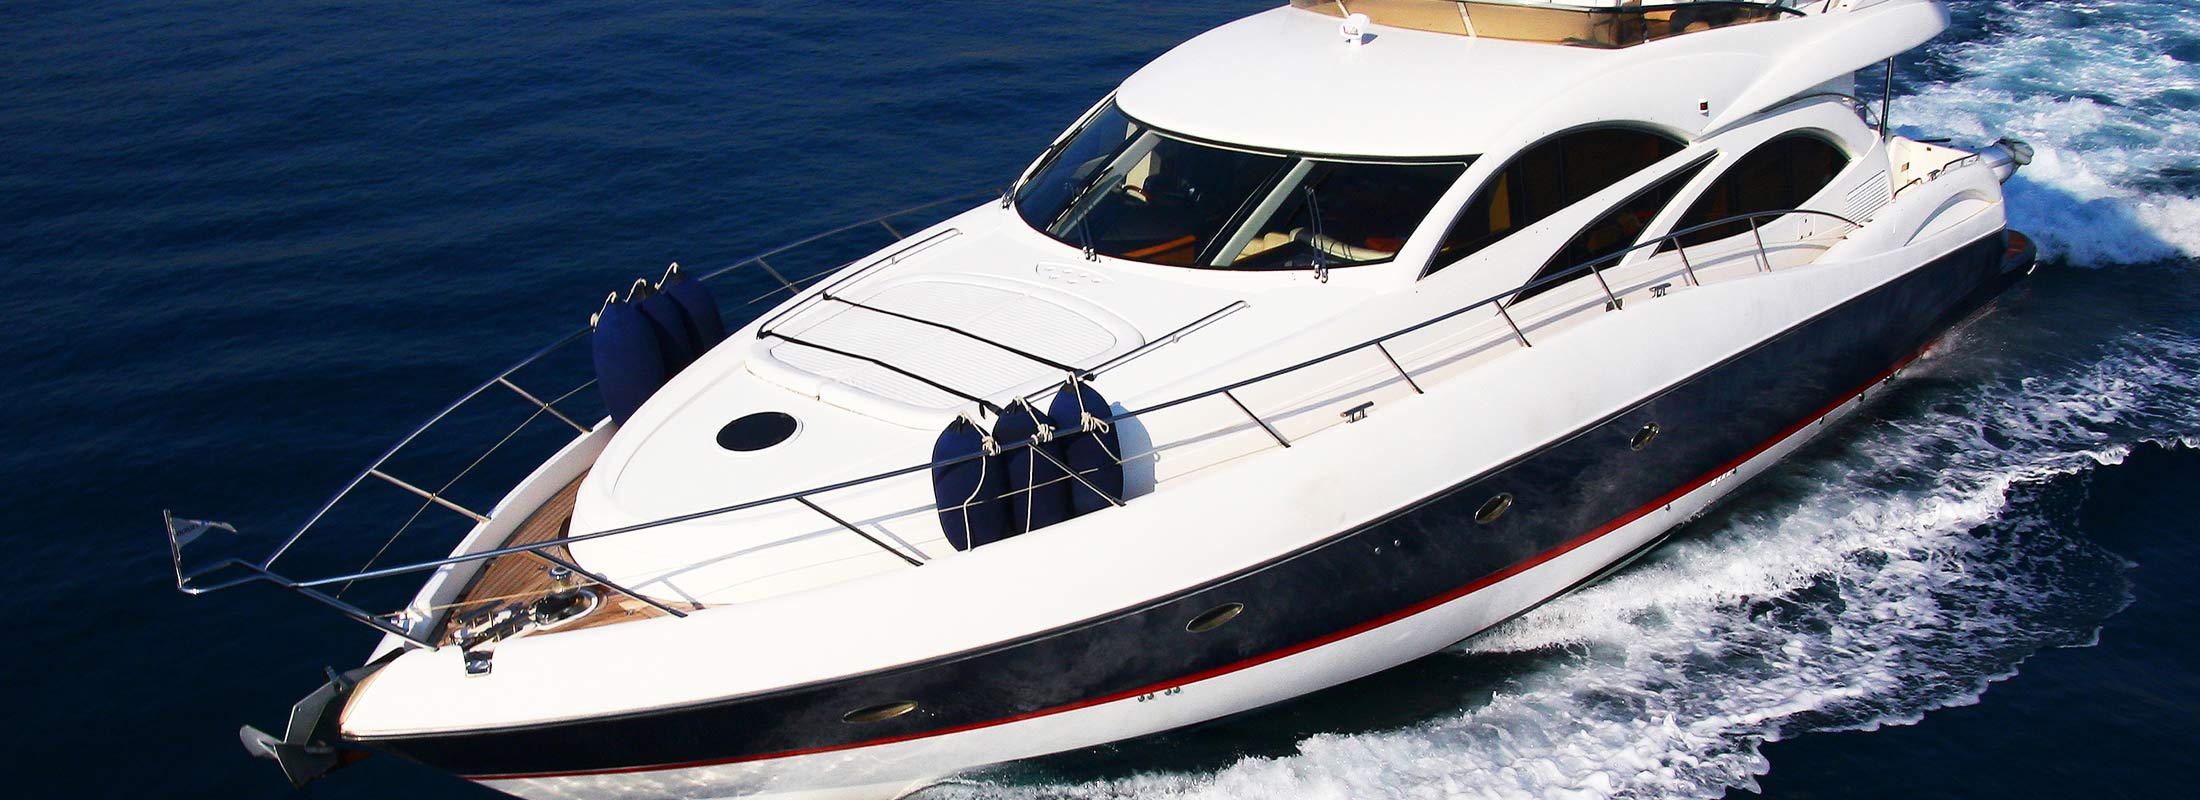 Seralia Motor Yacht for Charter Mediterranean slider 1